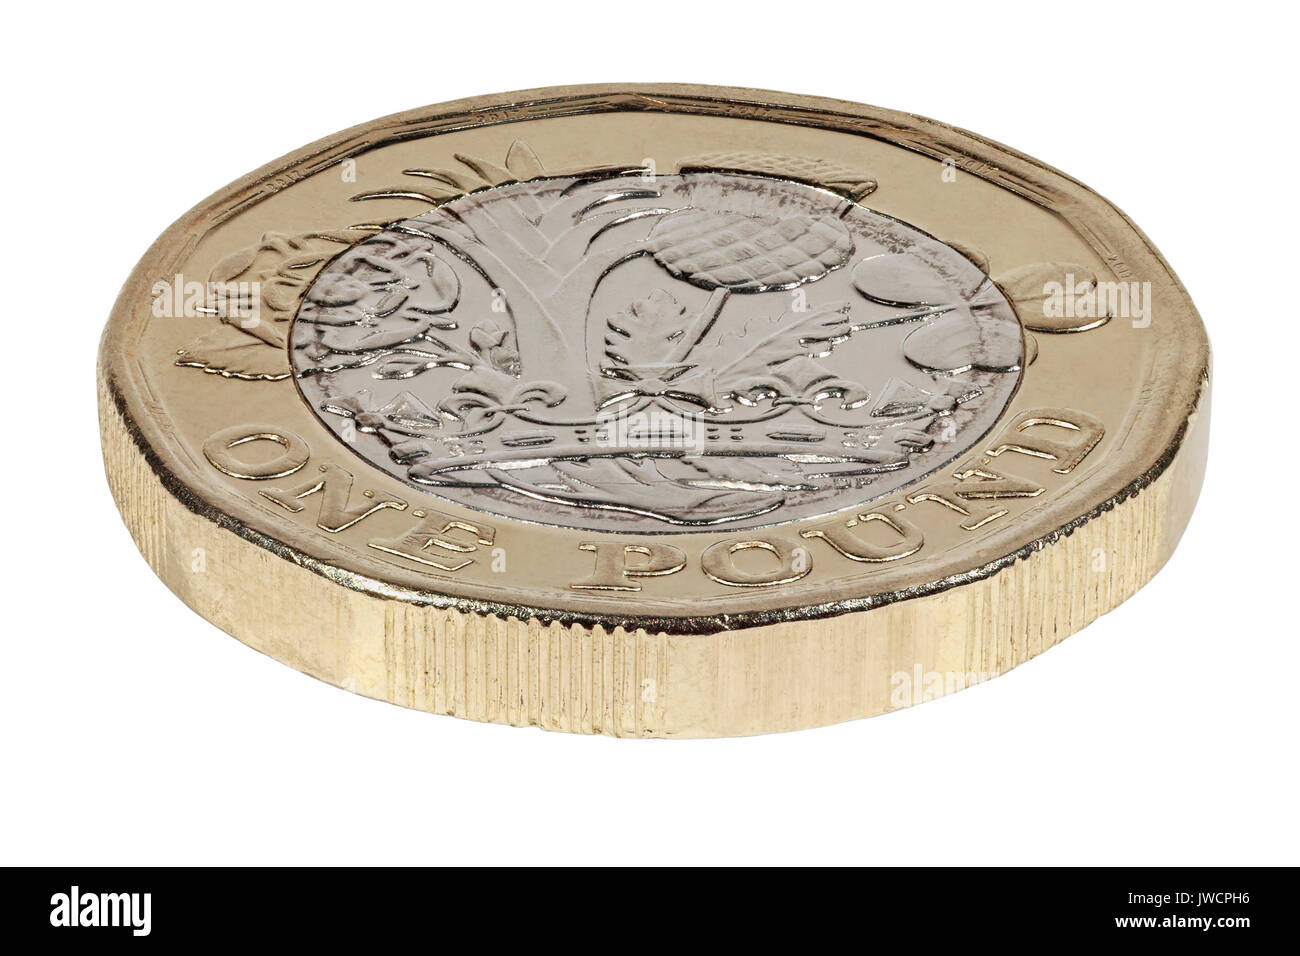 Nouveau 2017 £1 pièce, verso, pile, illustrant la rose, le poireau, le chardon et le trèfle représentant la Grande Bretagne - Angleterre, Pays de Galles, Ecosse et Irlande Banque D'Images